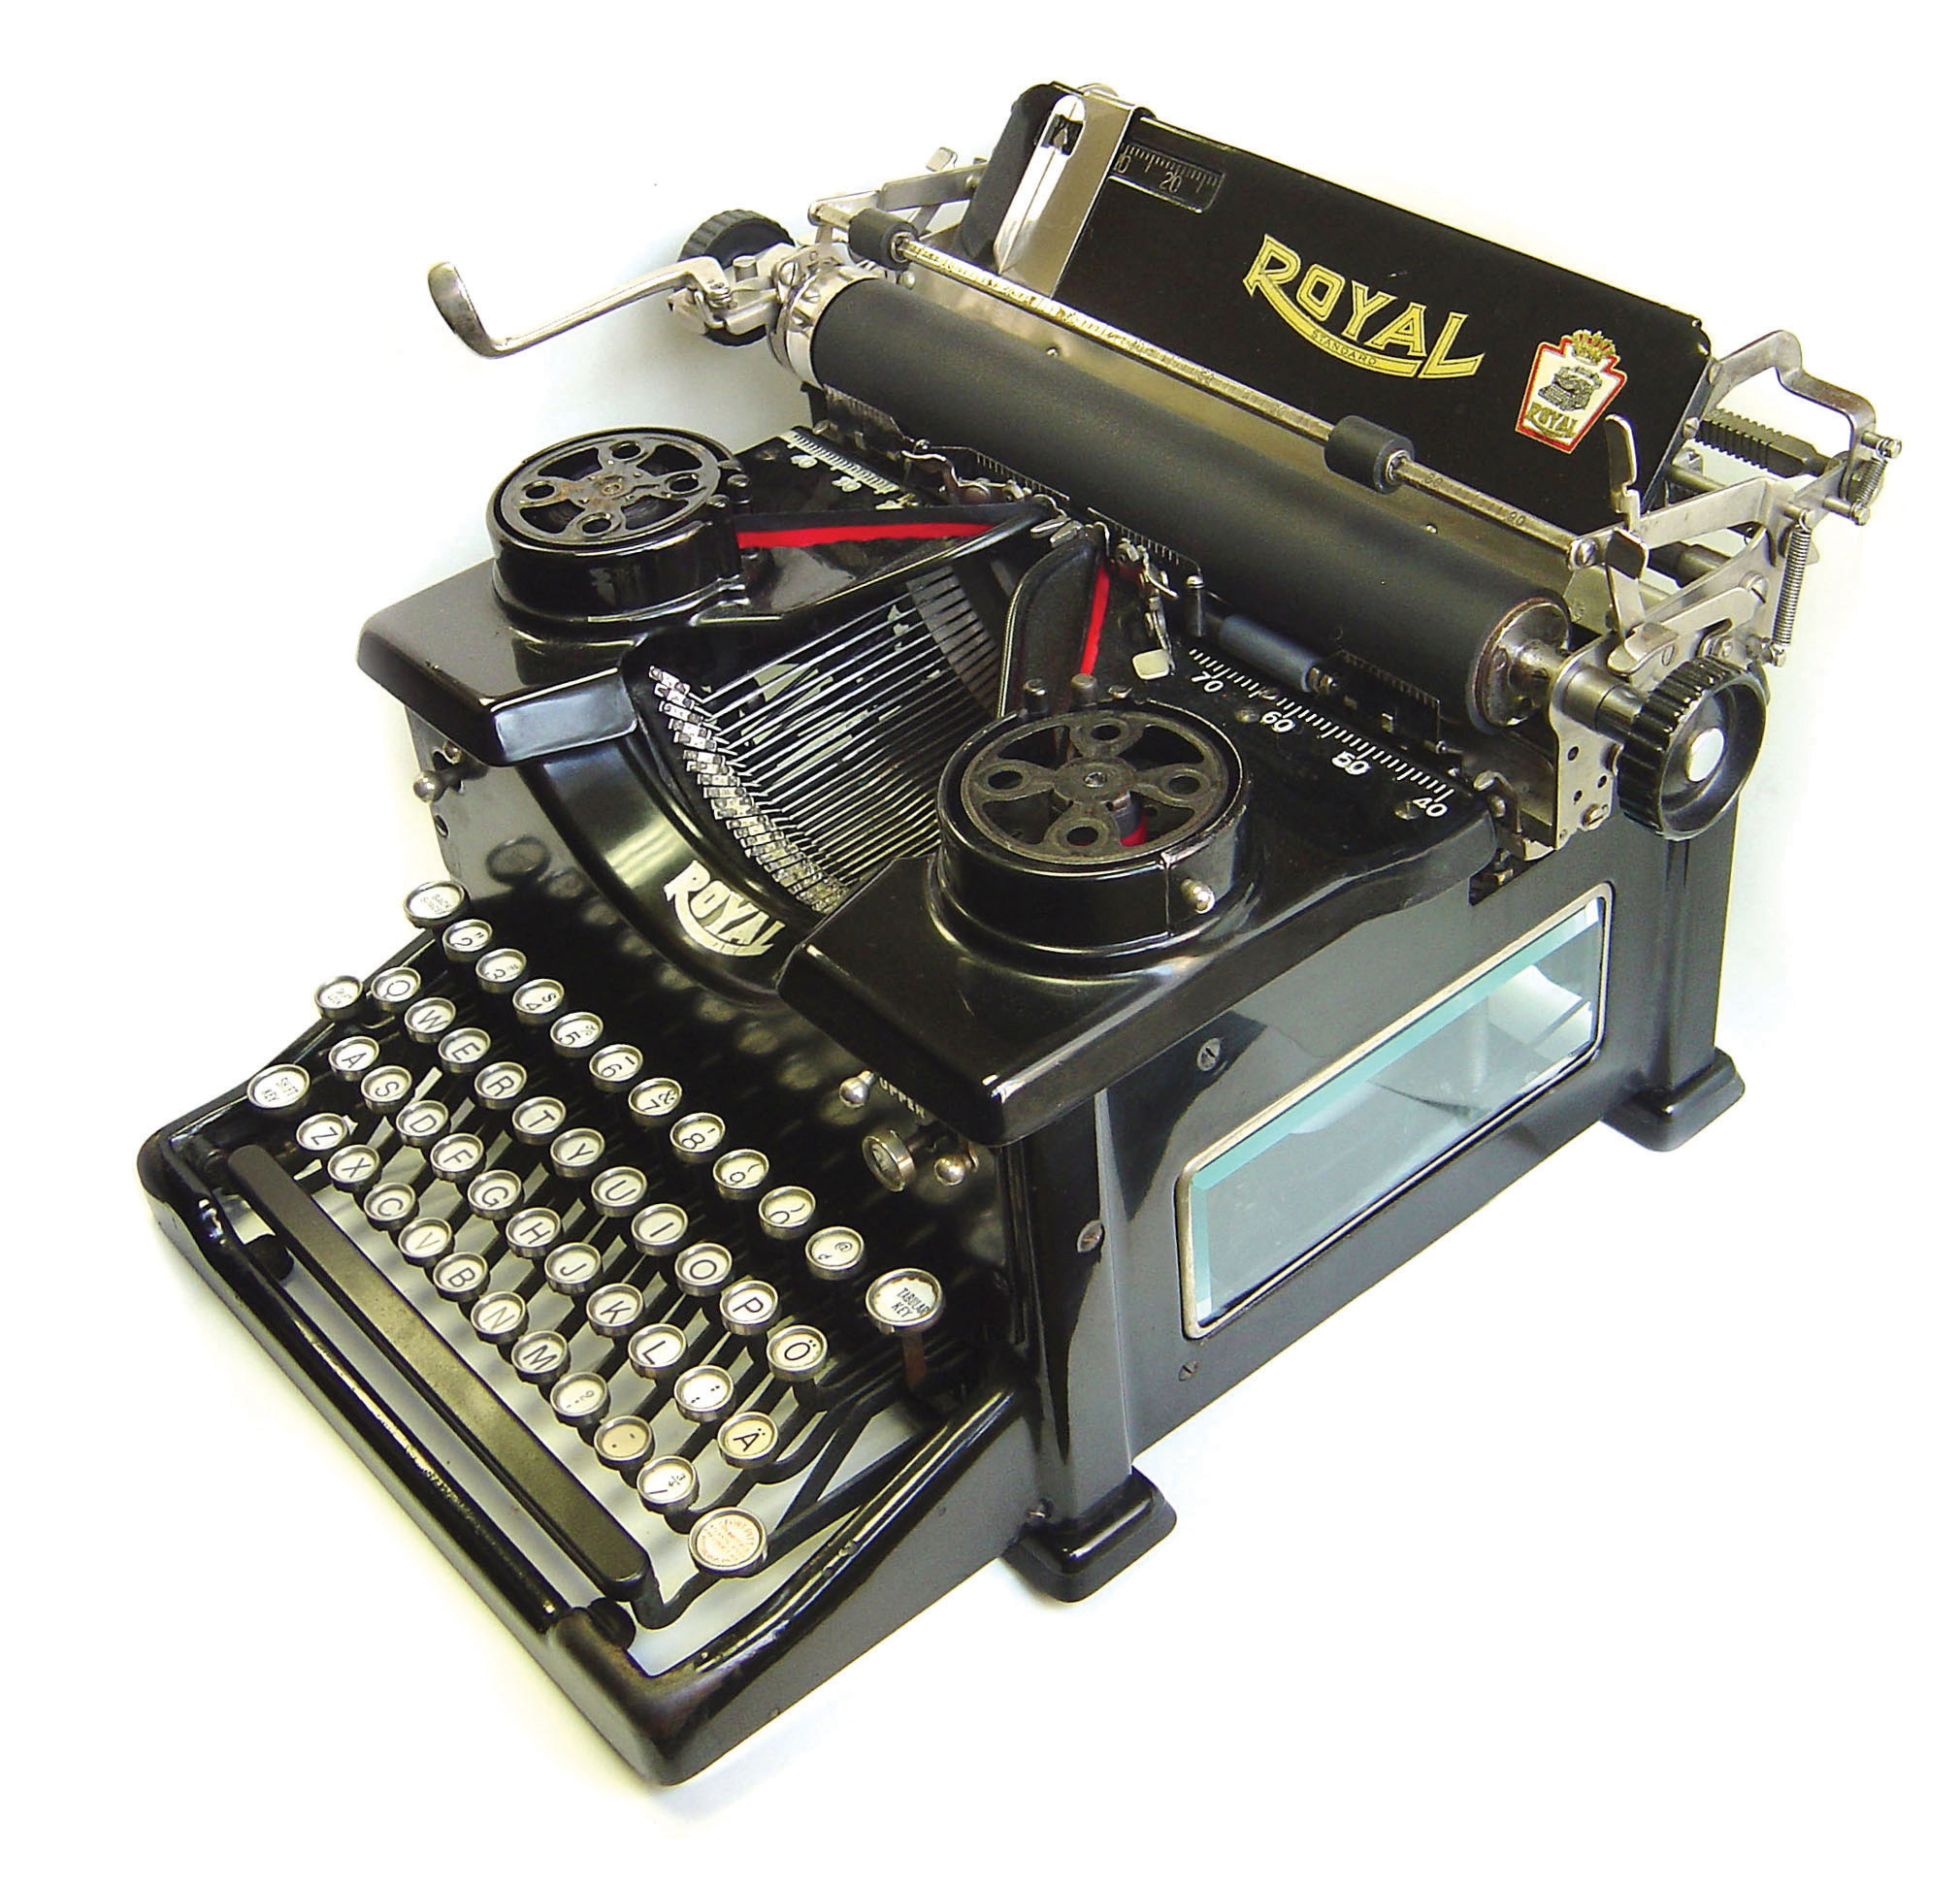 Royal No. 10 typewriter